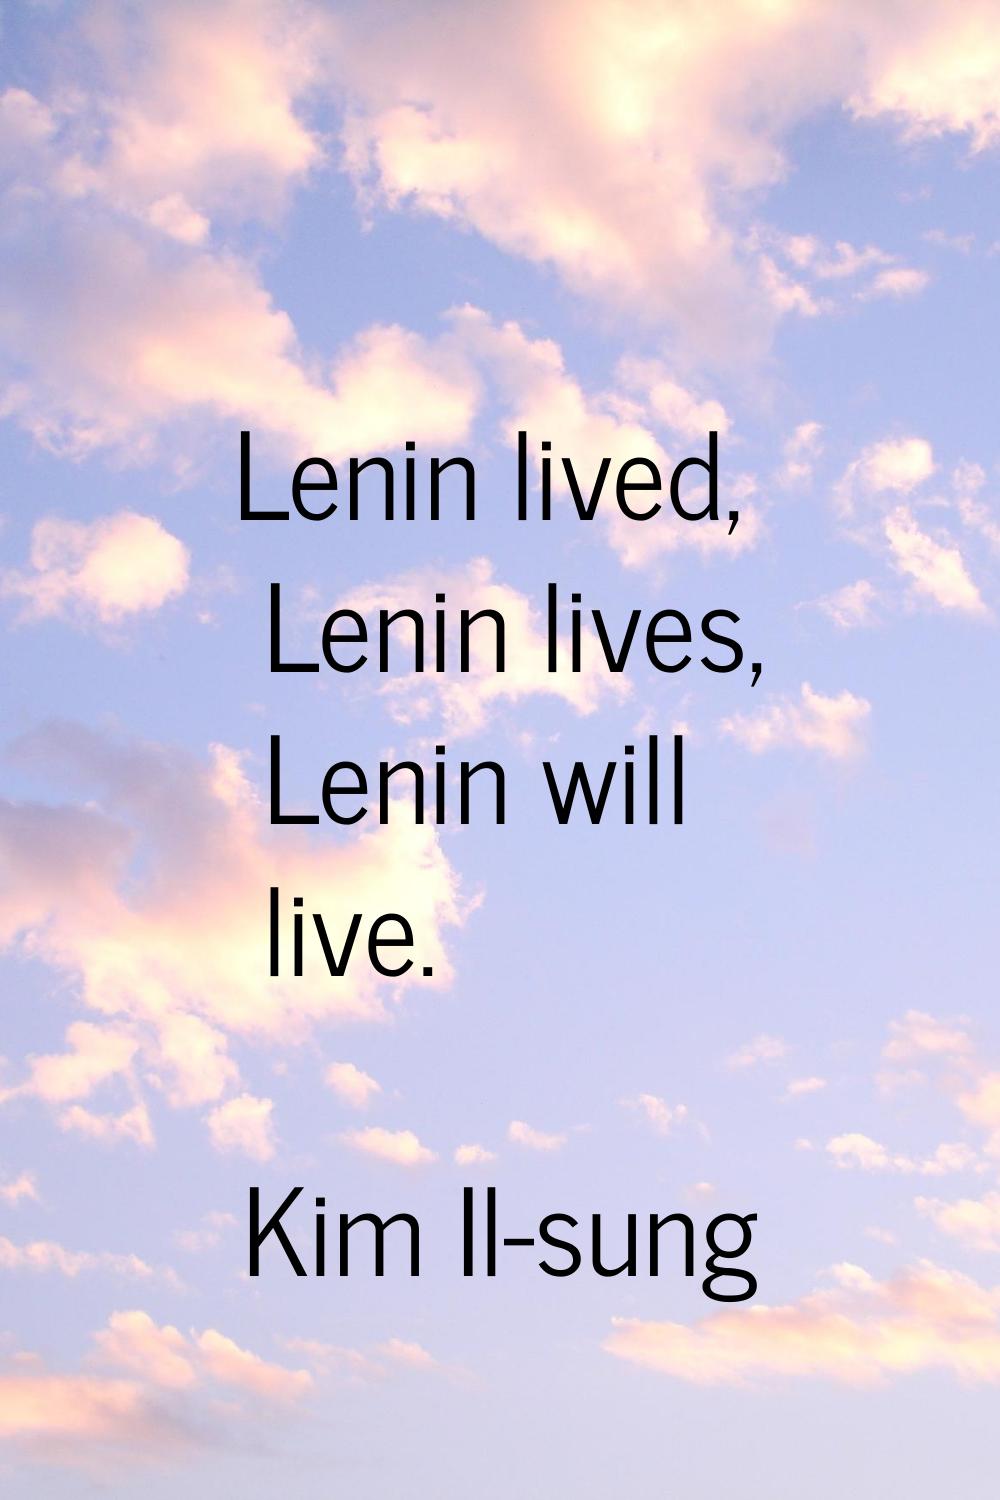 Lenin lived, Lenin lives, Lenin will live.